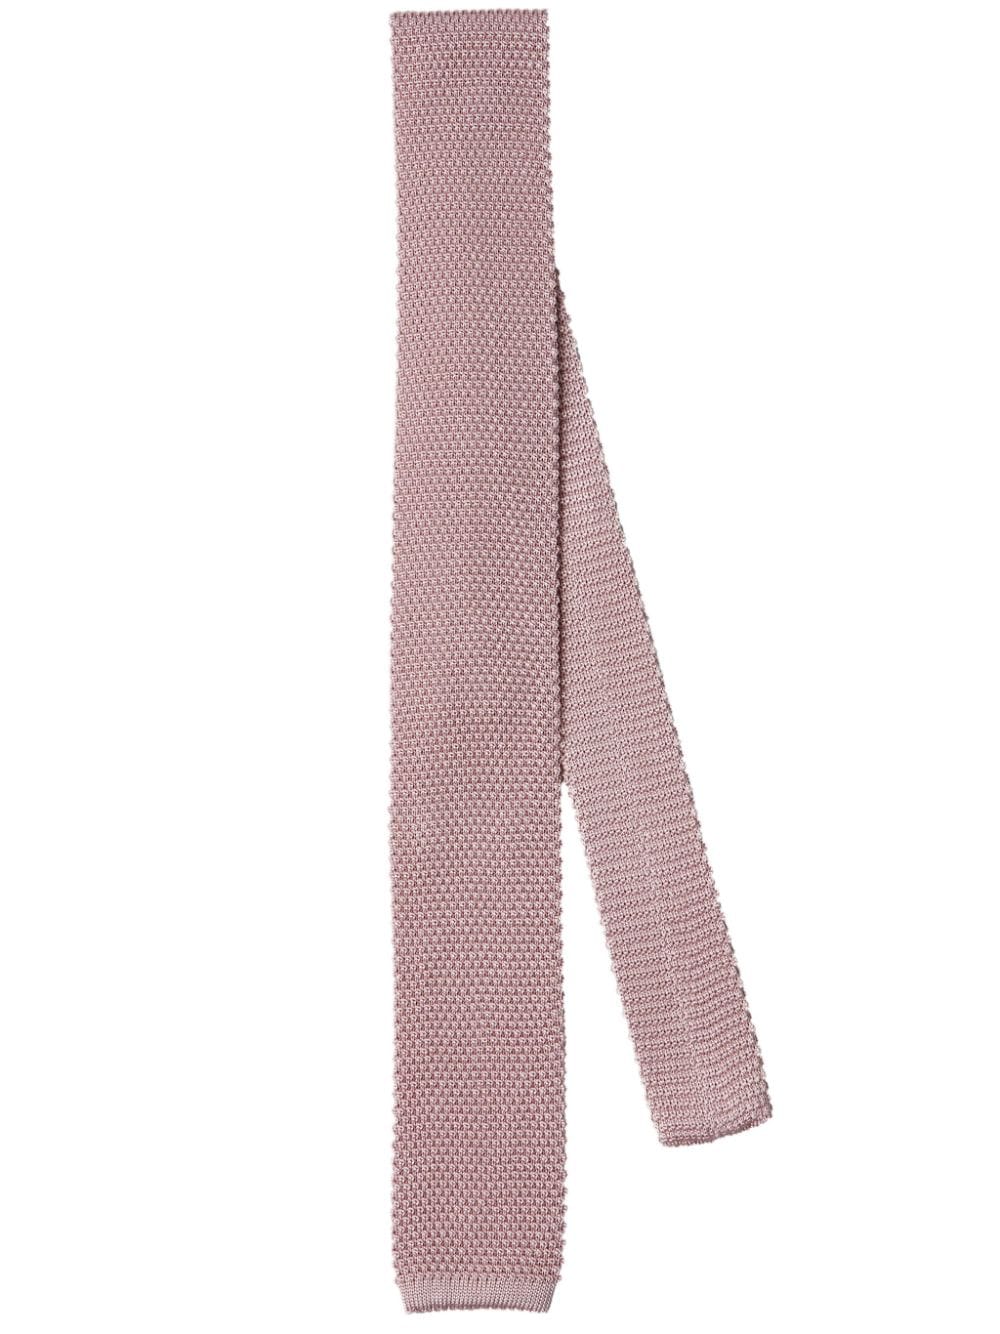 silk knit tie